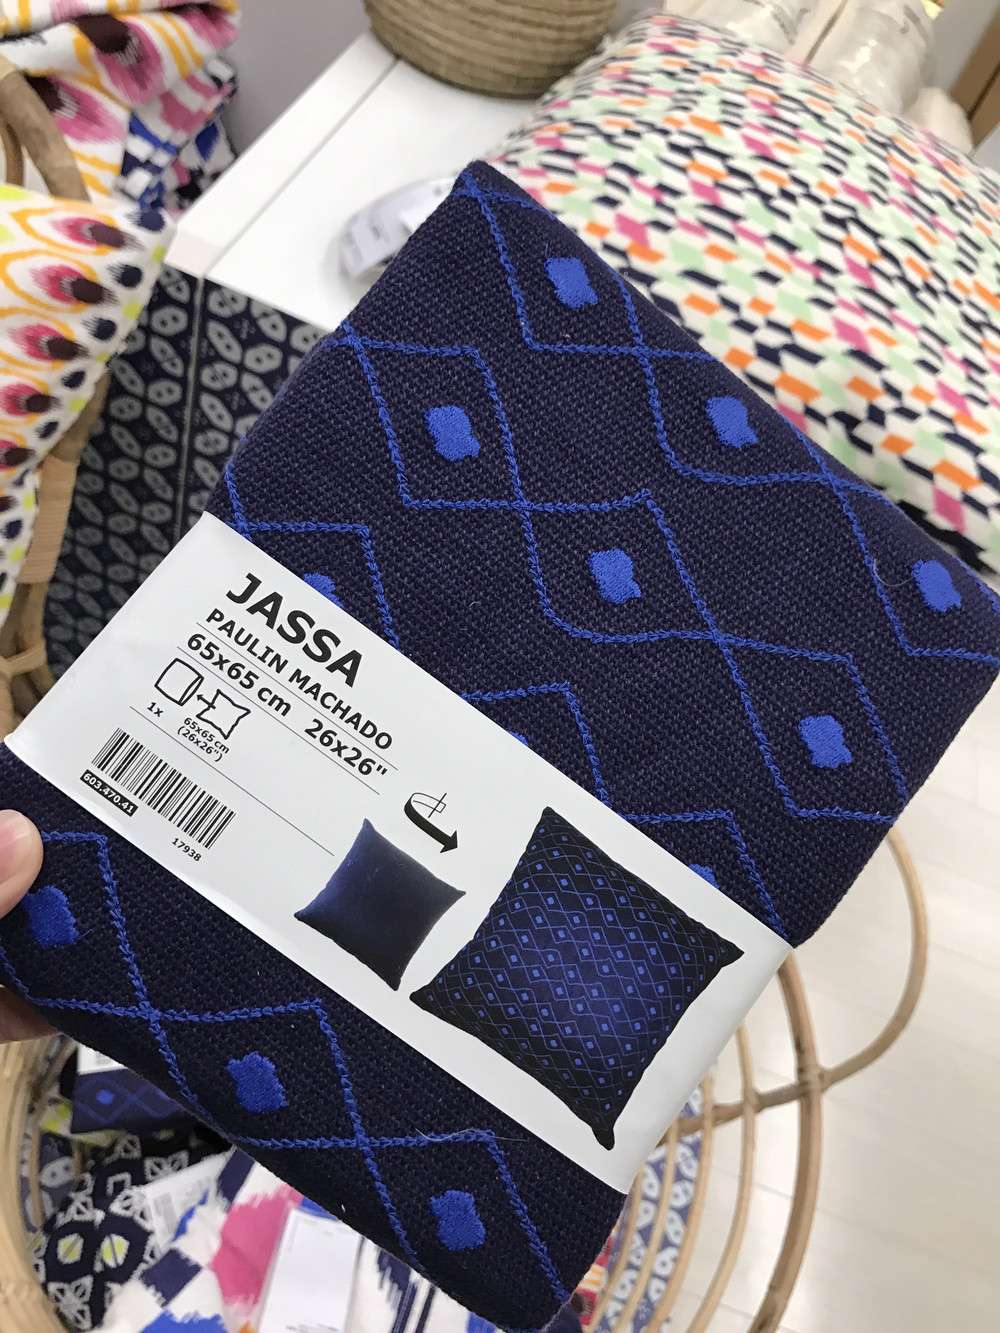 IKEA（イケア）のJASSA（ヤッサ）シリーズ